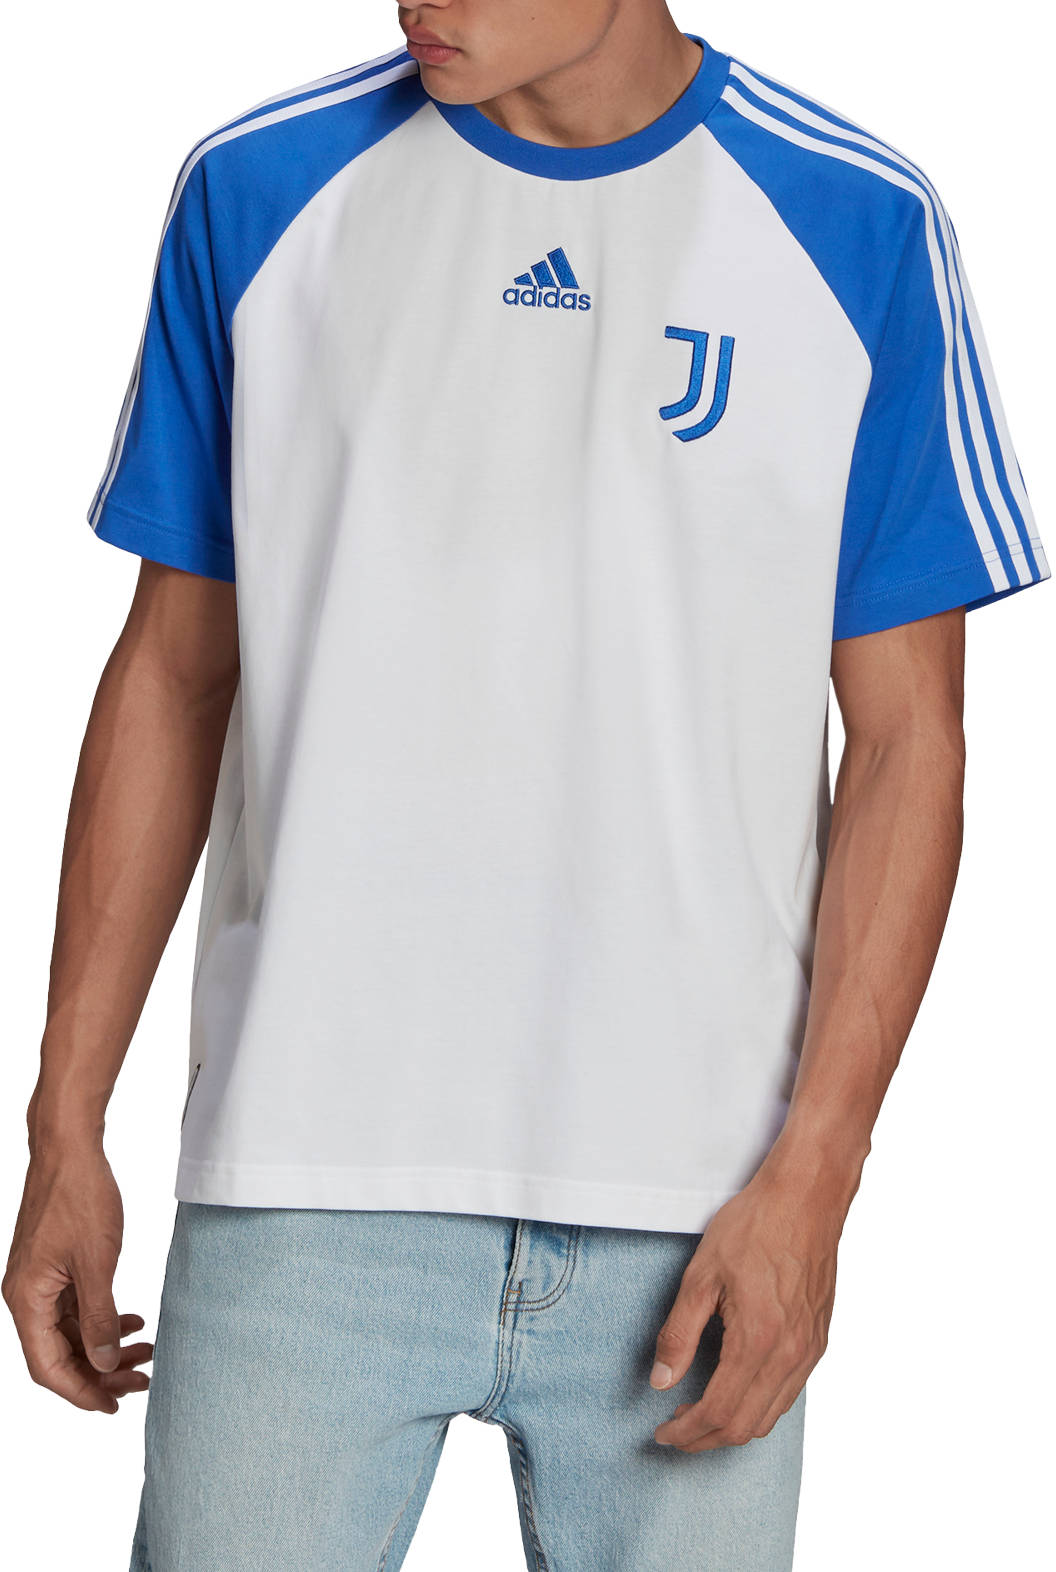 Pánské tričko s krátkým rukávem adidas Juventus Teamgeist